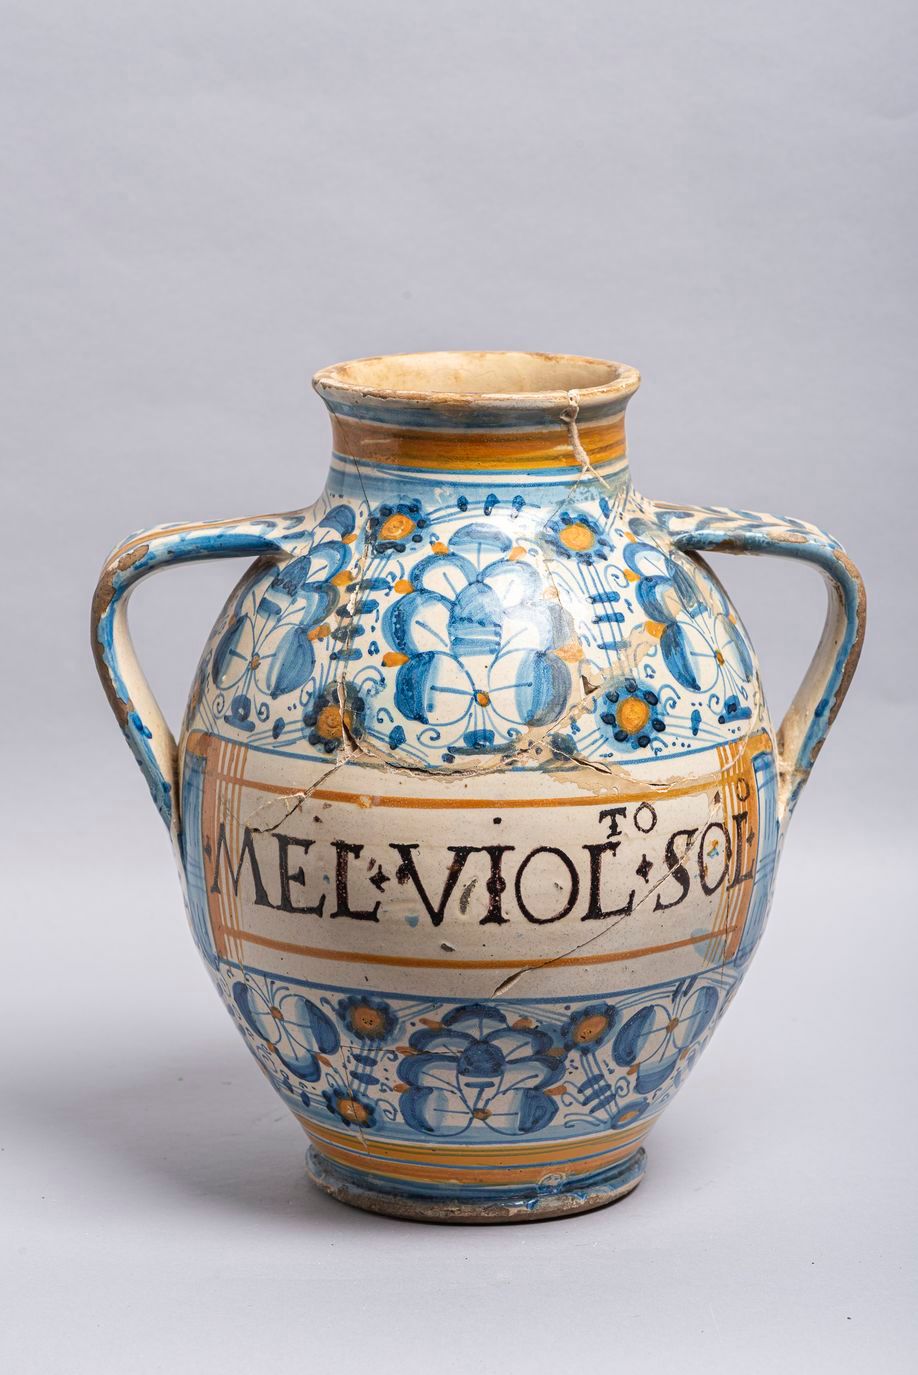 Null 33.一件16世纪末的Montelupo陶器药罐，双柄模型，上面有蓝色和赭石色的金刚砂装饰，铭文：MEL.VIOL.SOL在一个圆圈里。(断裂，粘在后&hellip;